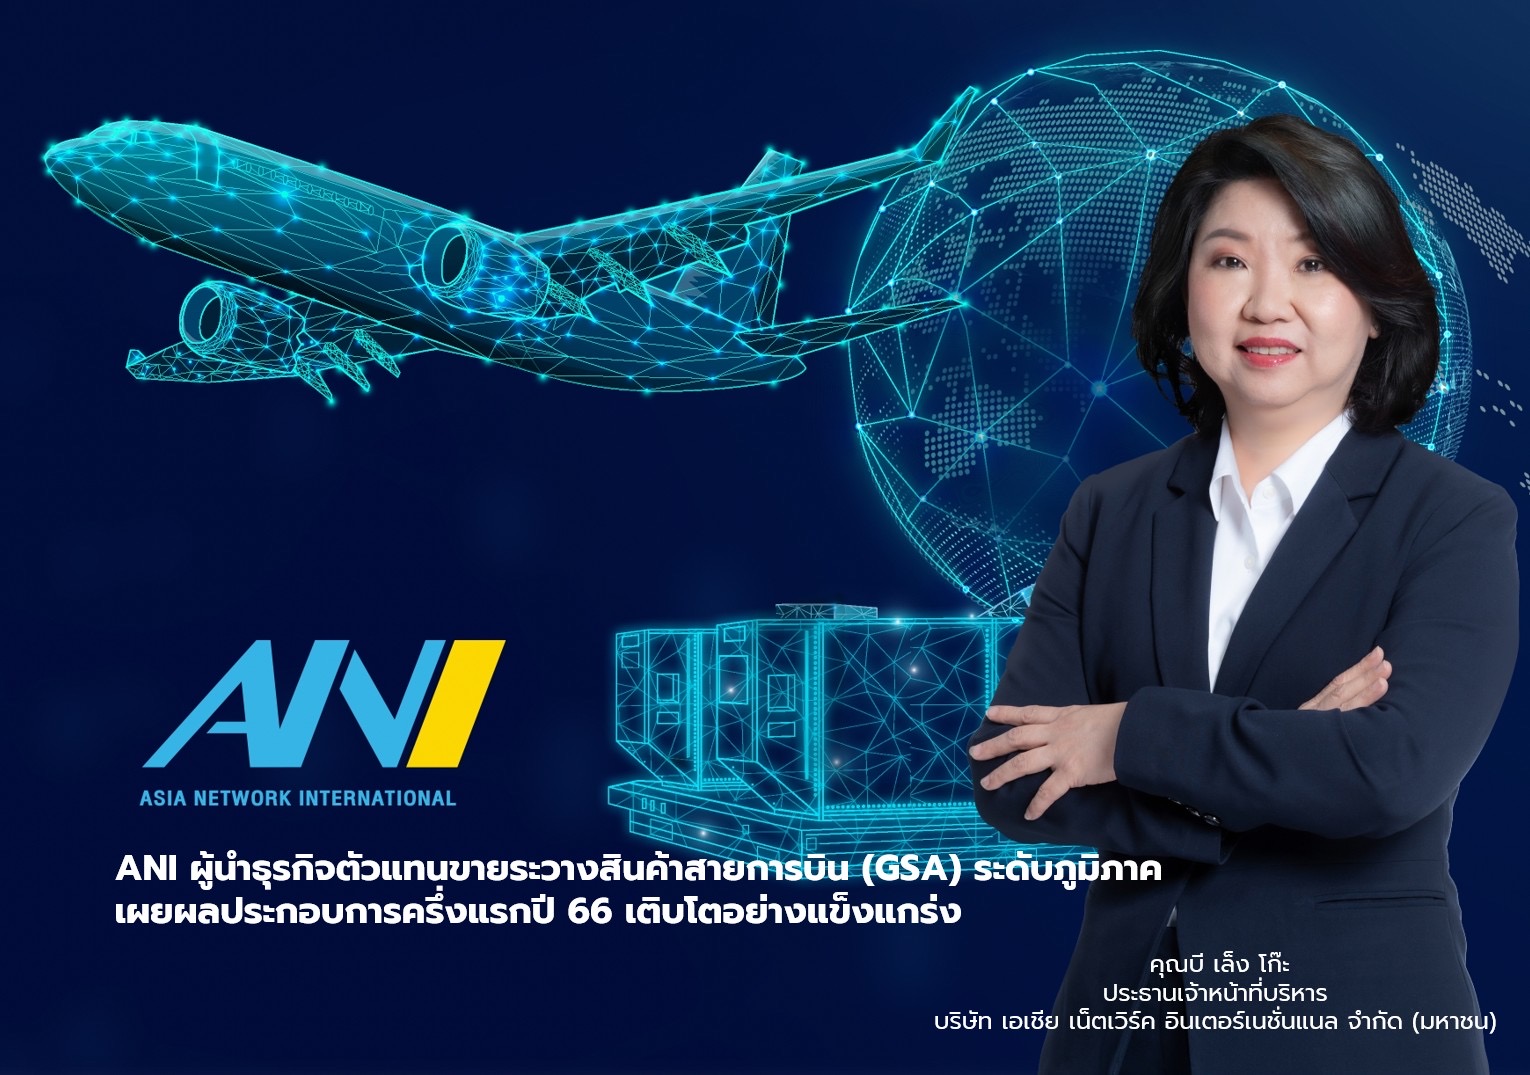 ANI ผู้นำธุรกิจตัวแทนขายและบริหารพื้นที่ขนส่งสินค้าทางสายการบิน  พร้อมเดินหน้าขยายเครือข่ายและเข้าจดทะเบียนในตลาดหลักทรัพย์แห่งประเทศไทย